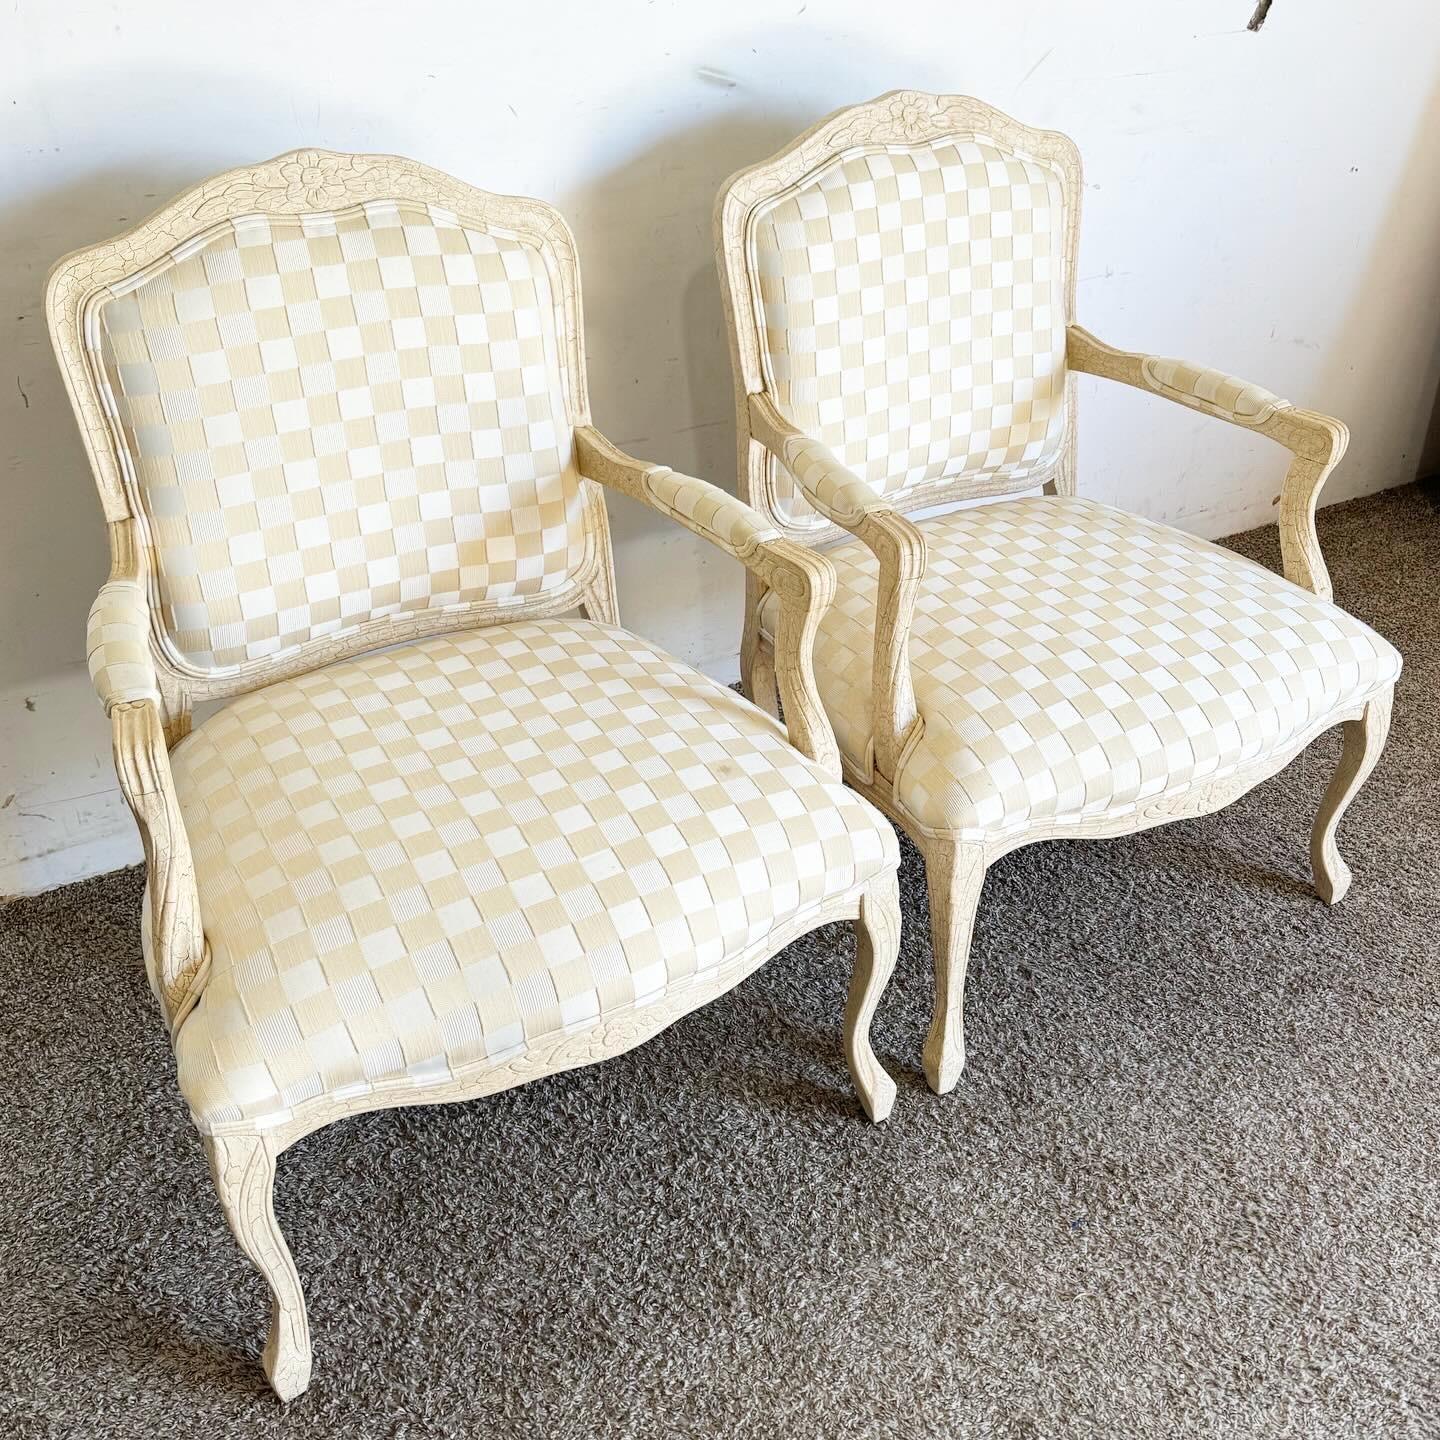 Élevez votre espace avec ces fauteuils Vintage Regency Cream Crackled. Dotés d'une élégance classique, de sculptures détaillées et d'un rembourrage luxueux, ils sont parfaits pour ajouter un charme vintage et du confort à n'importe quelle pièce.